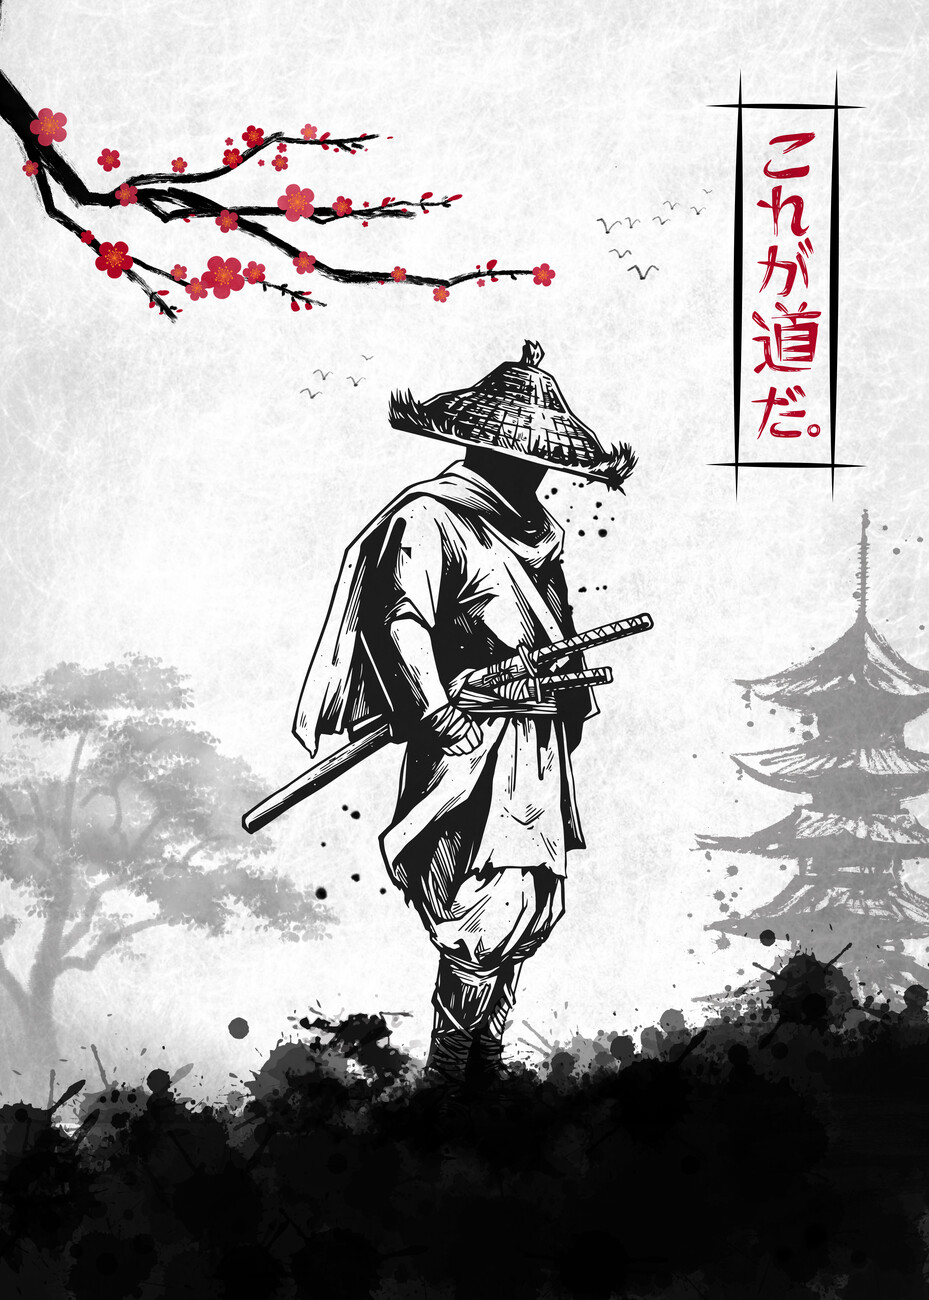 Wall Art Print Samurai Warrior, Gifts & Merchandise